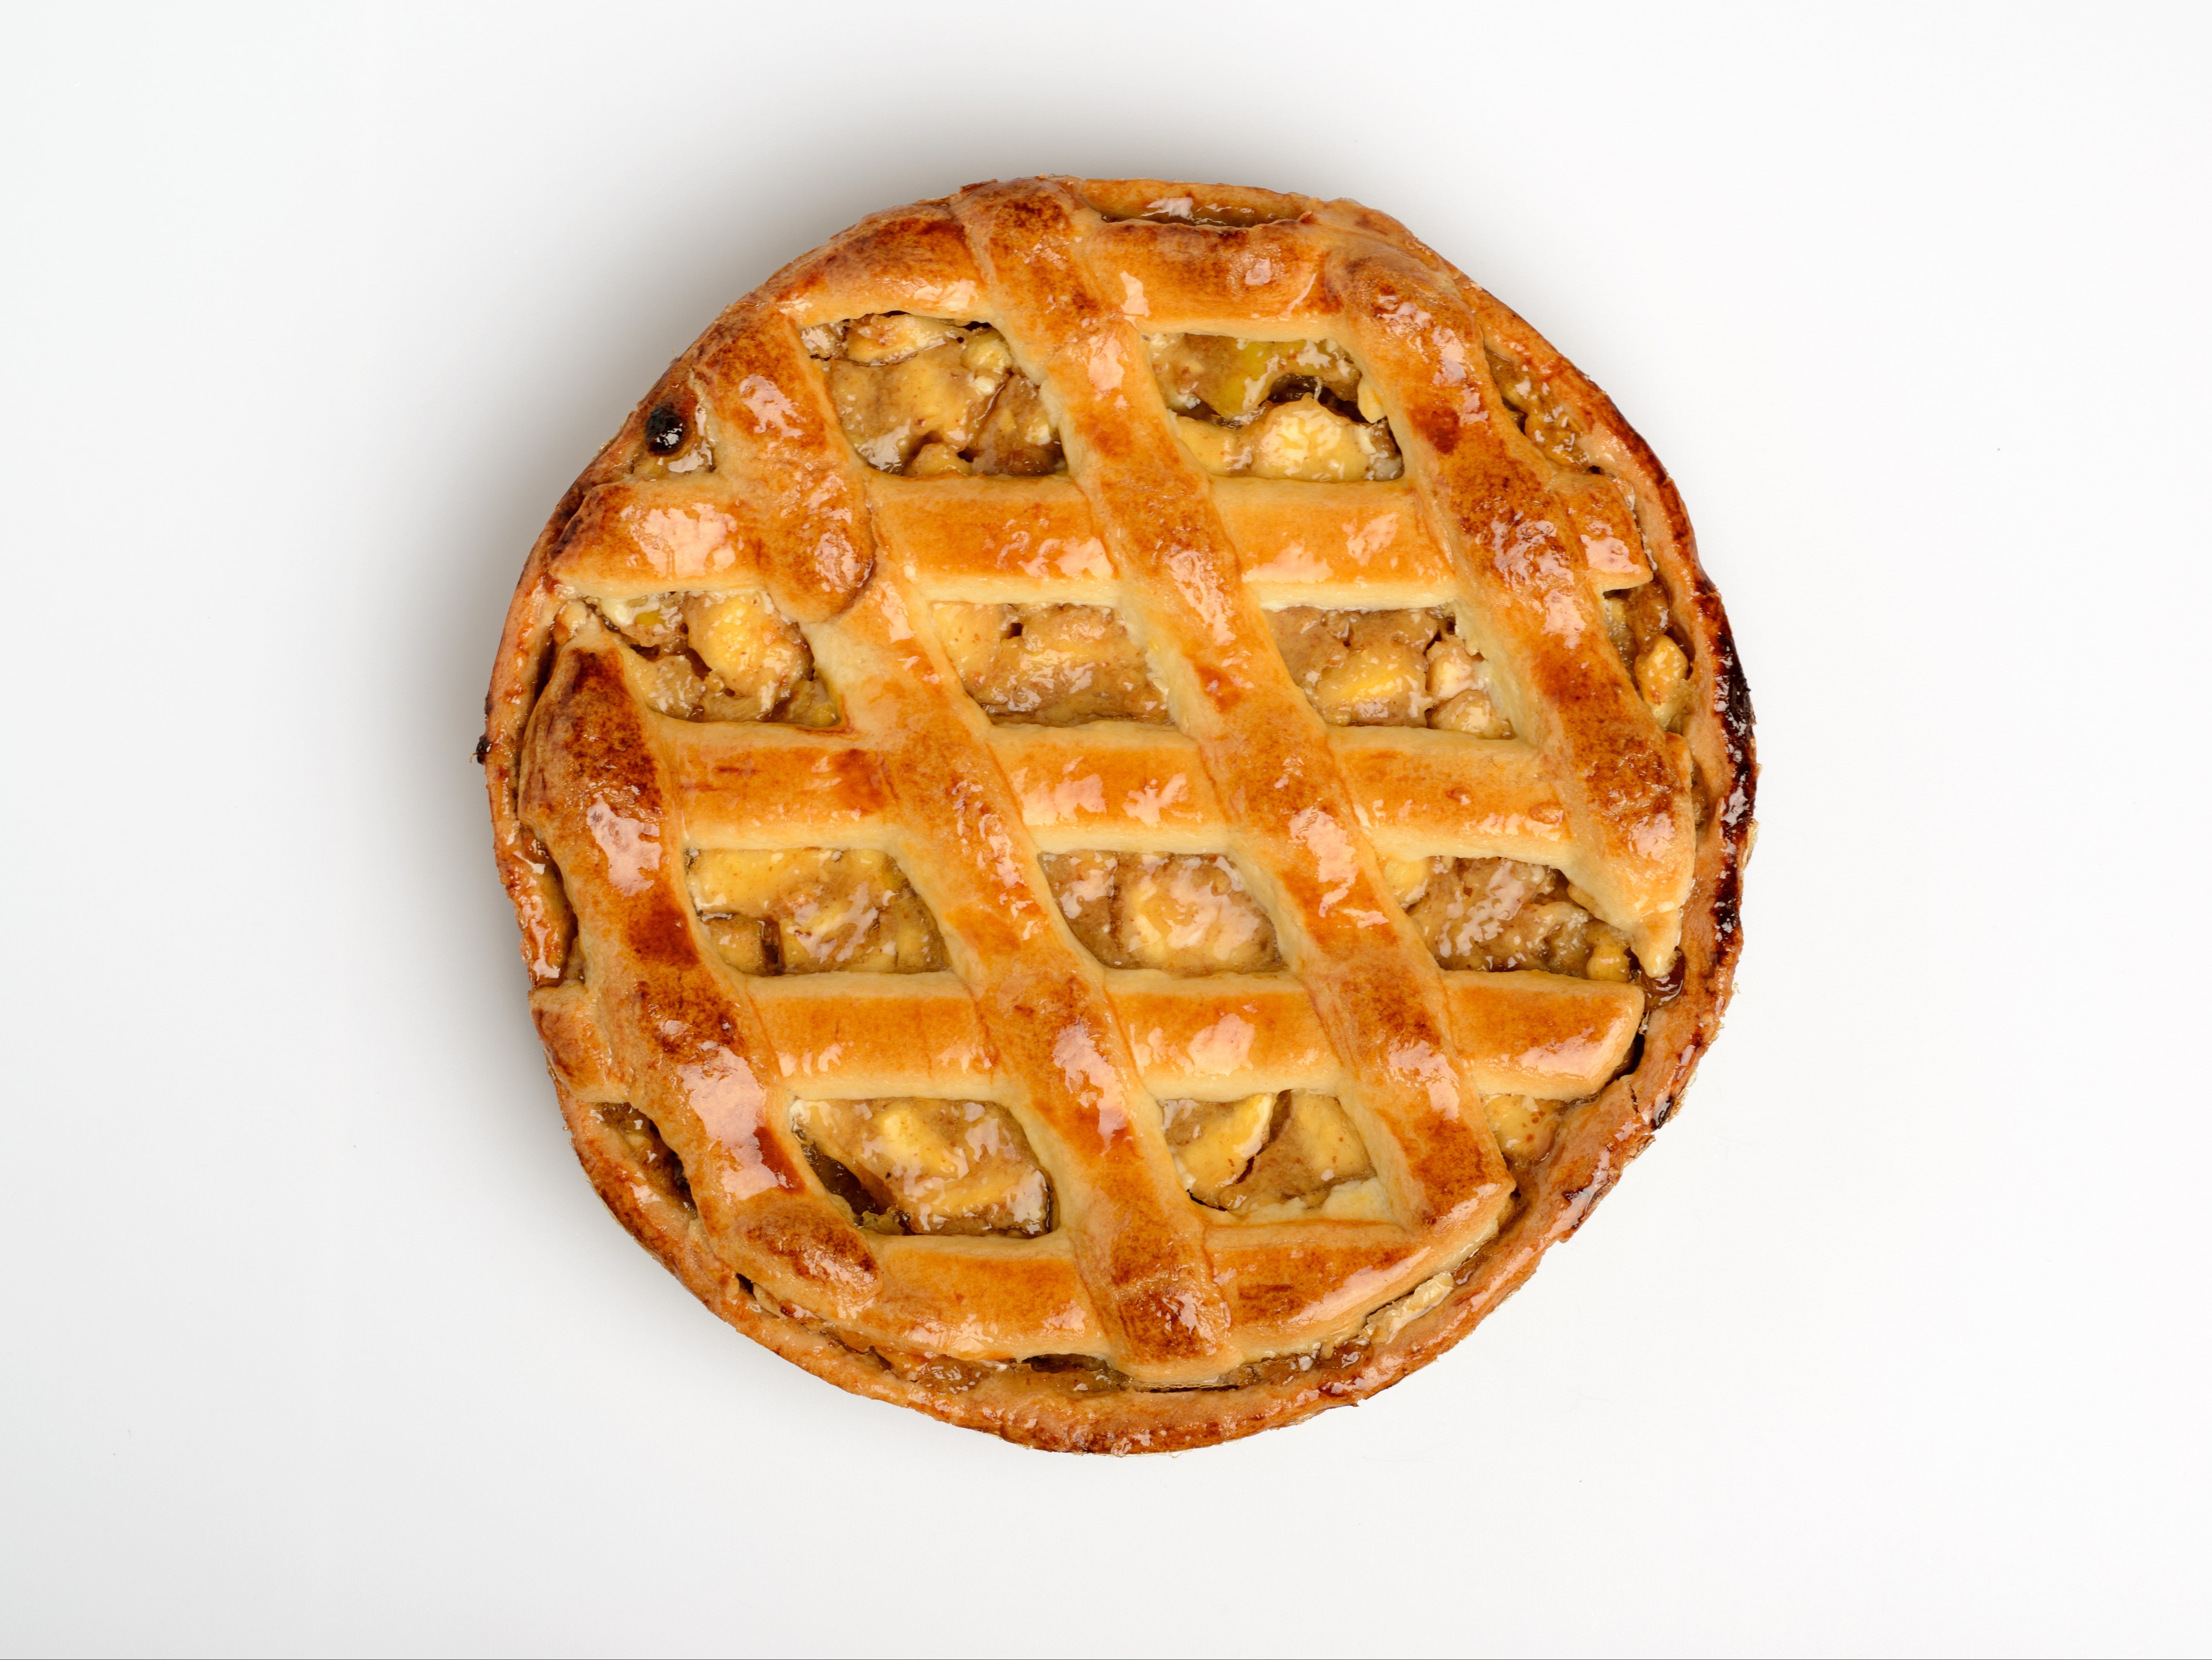 Origins of apple pie sparks debate over racism